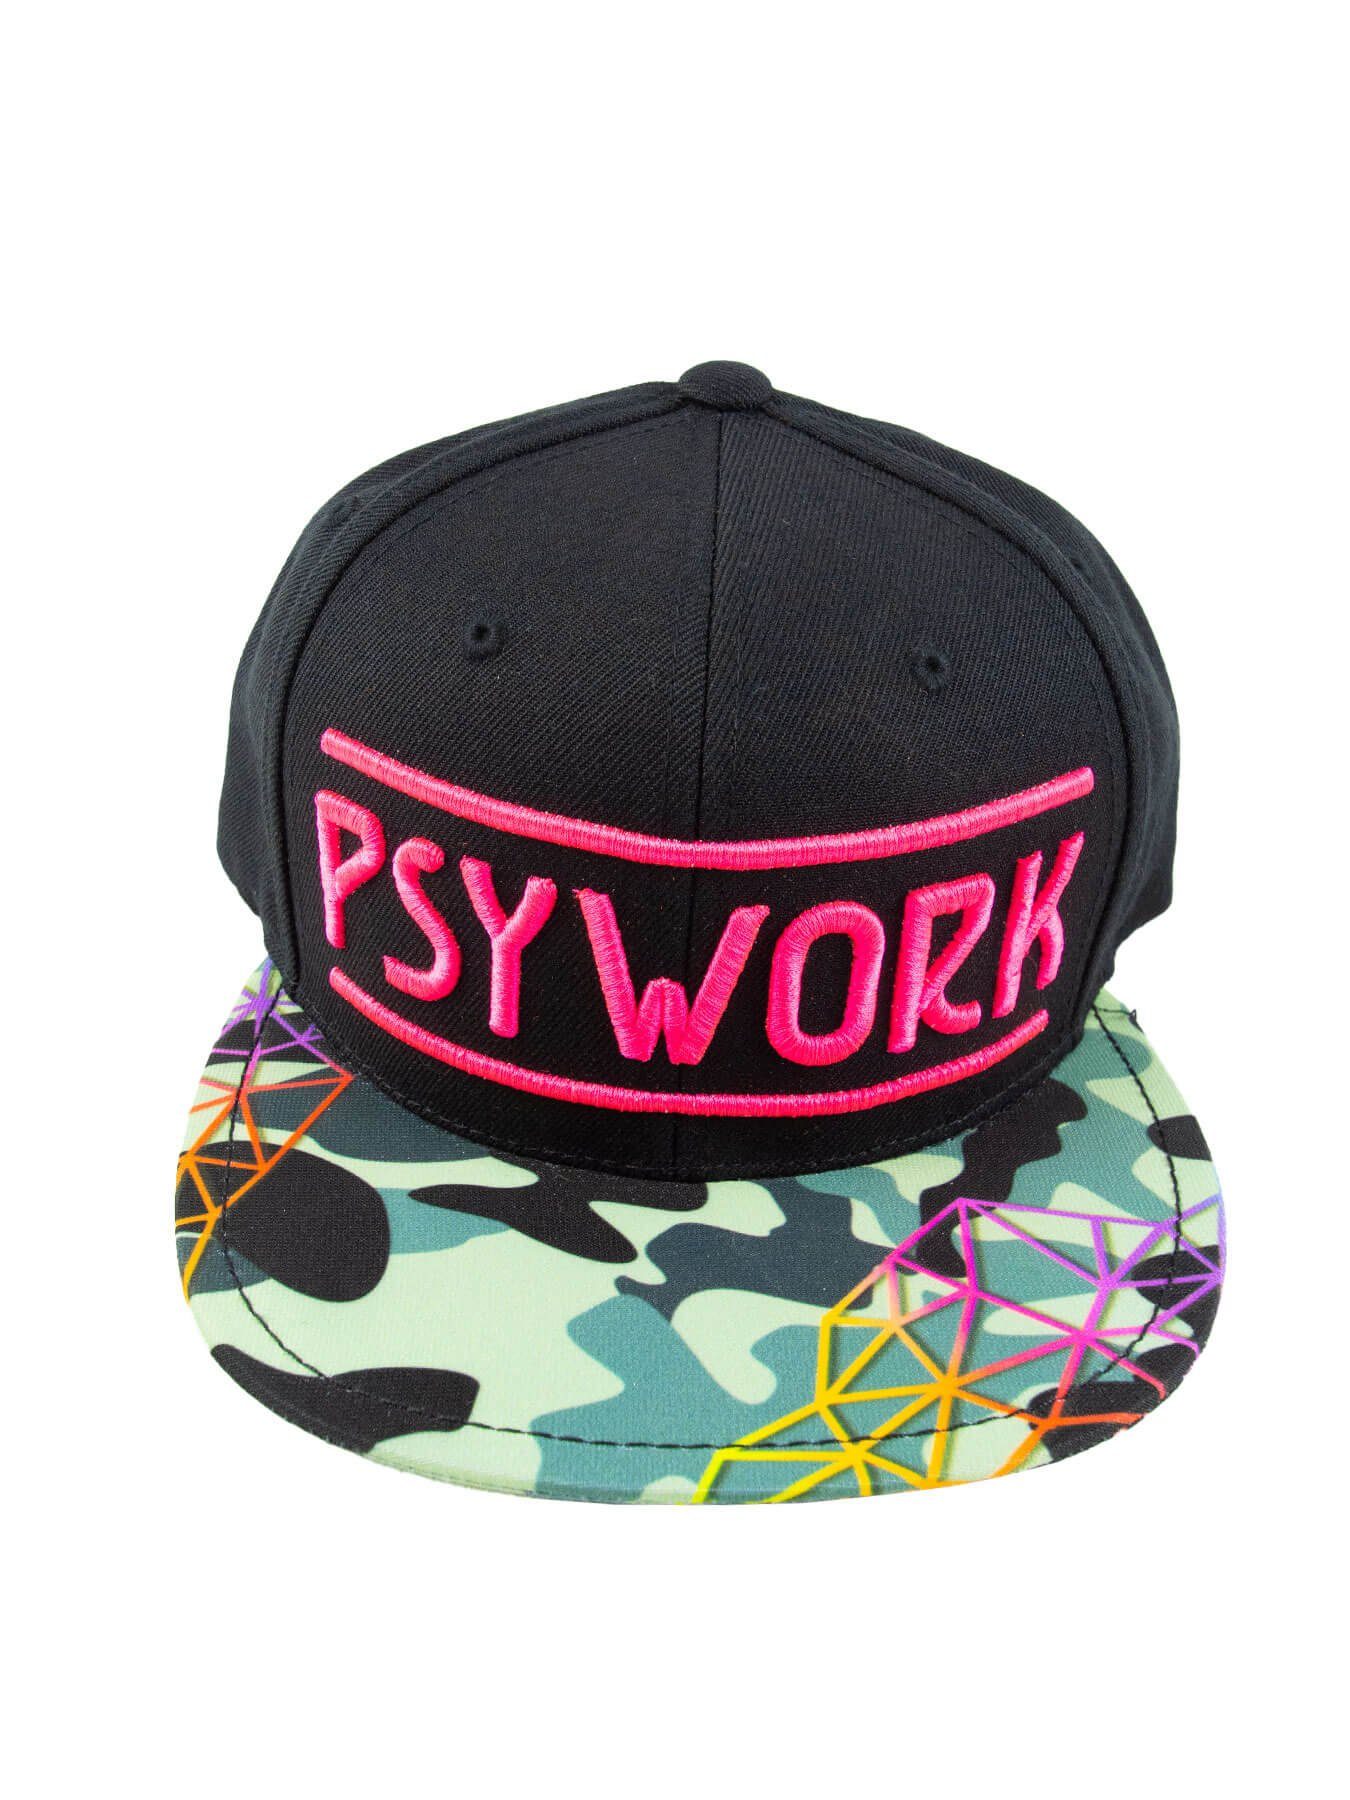 PSYWORK Snapback Cap Schwarzlicht Black Schwarzlicht "Camouflage", Cap Pink UV-aktiv, Neon leuchtet unter